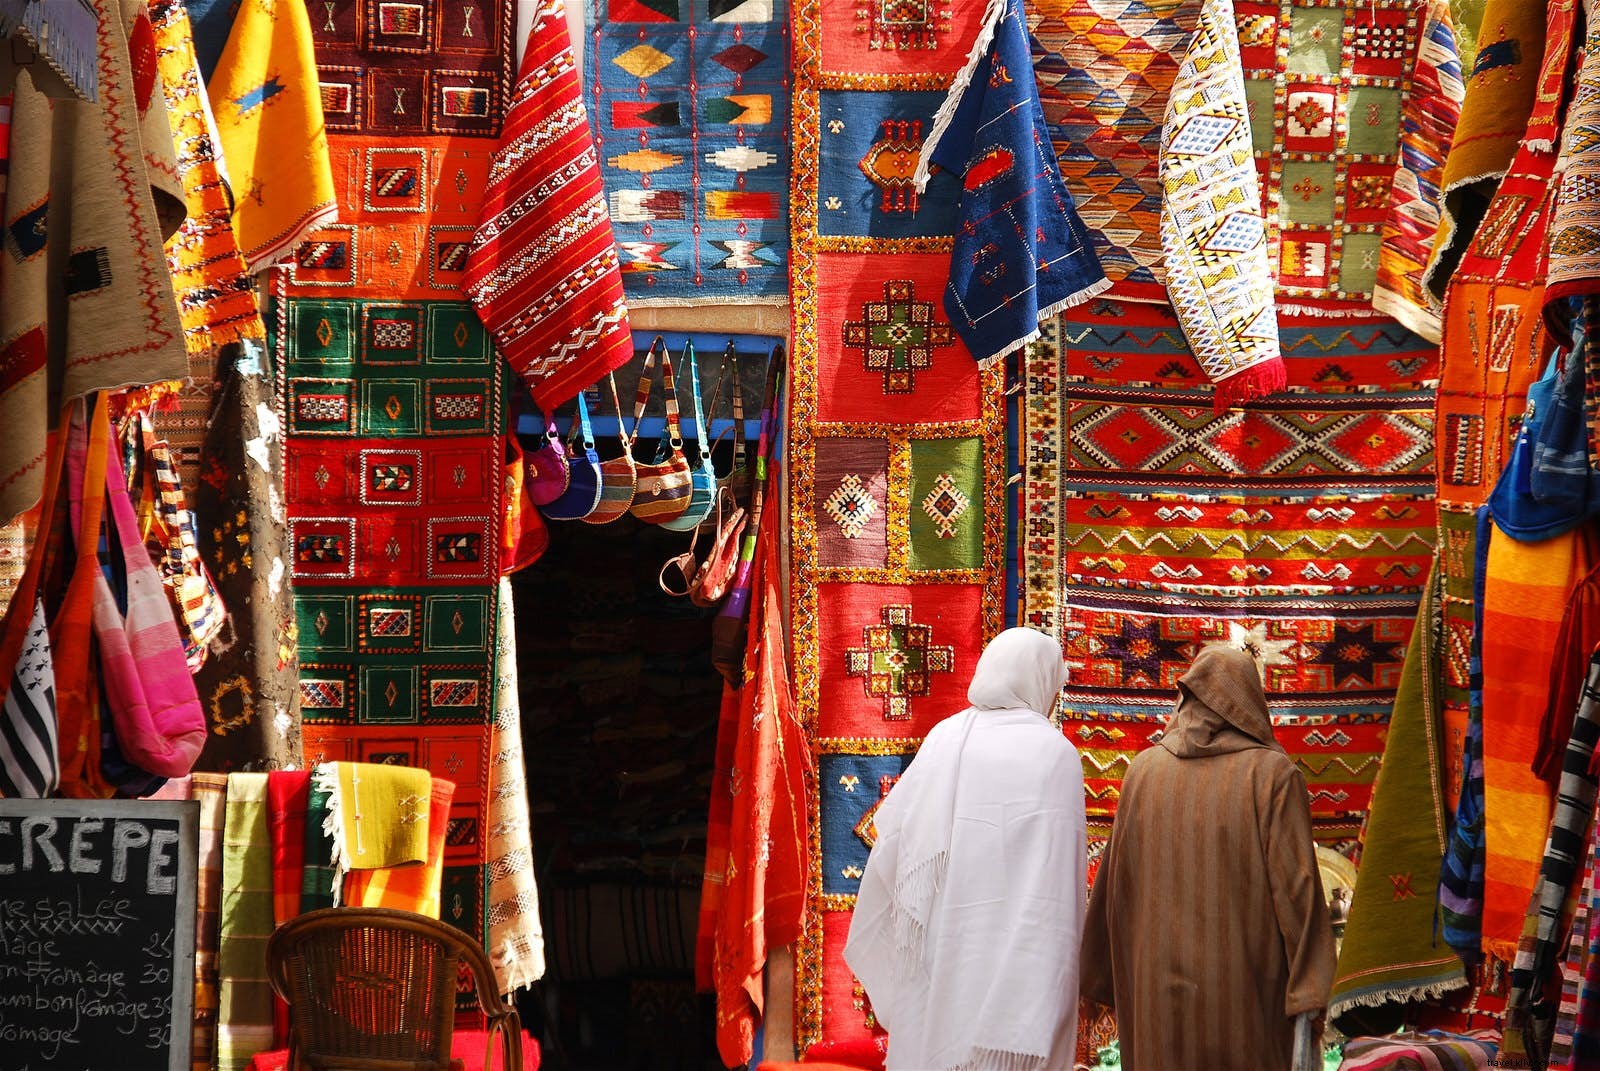 Compras en Essaouira:dónde comprar qué 